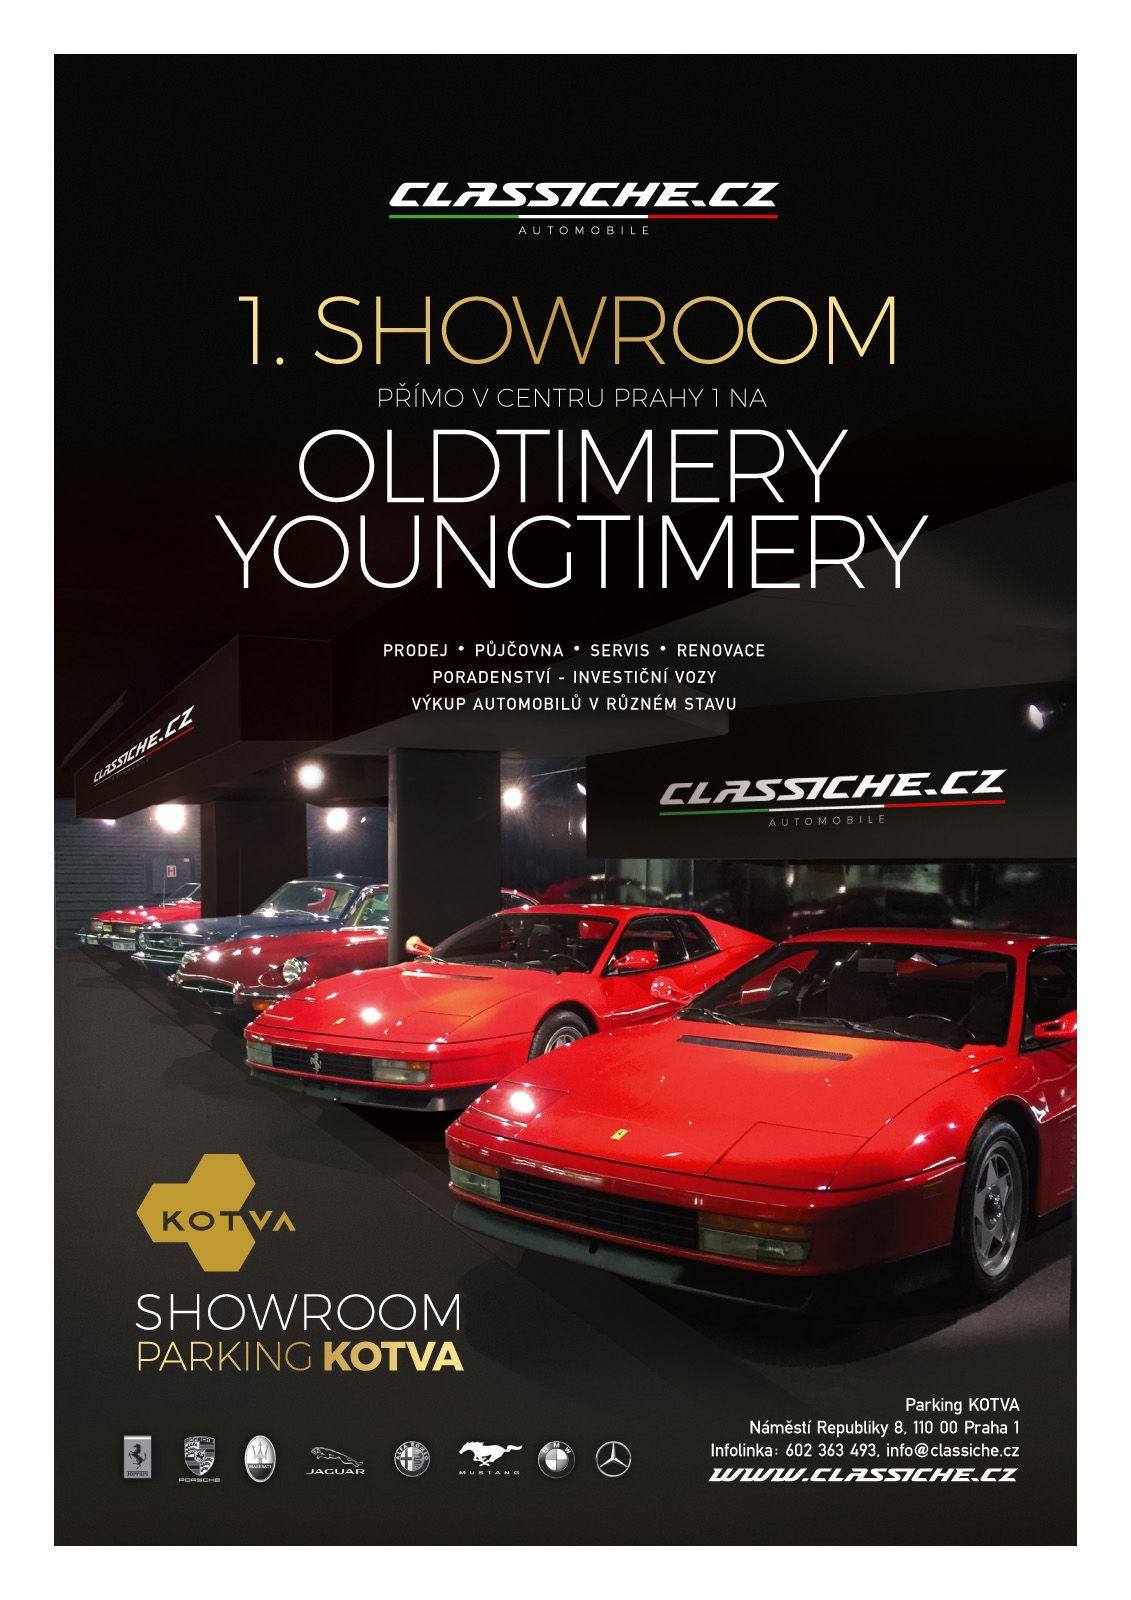 Classiche Showroom - logo